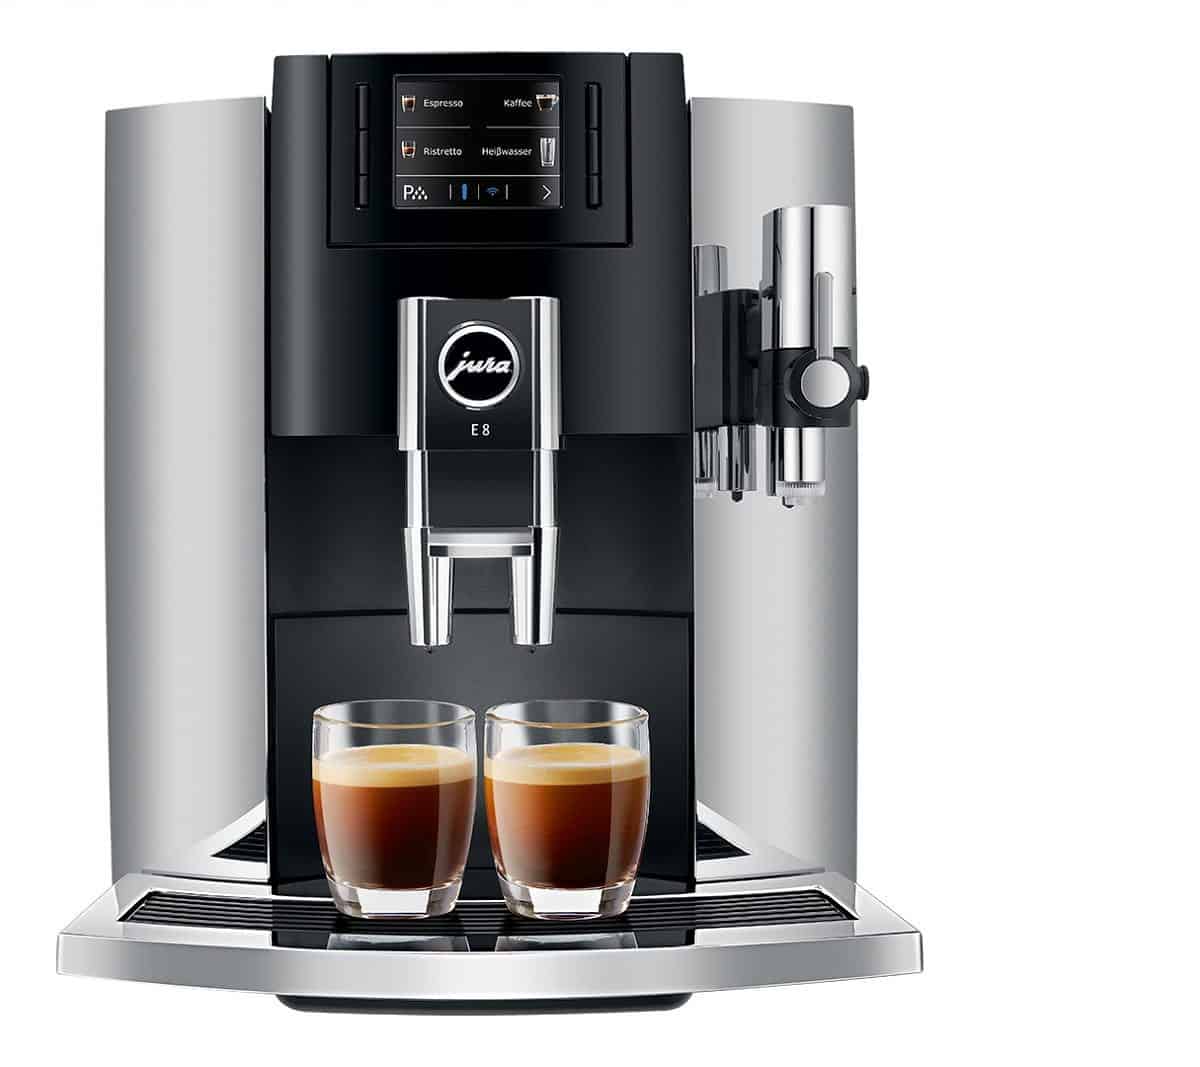 Jura E8 Espresso Coffee Machine Review 2022